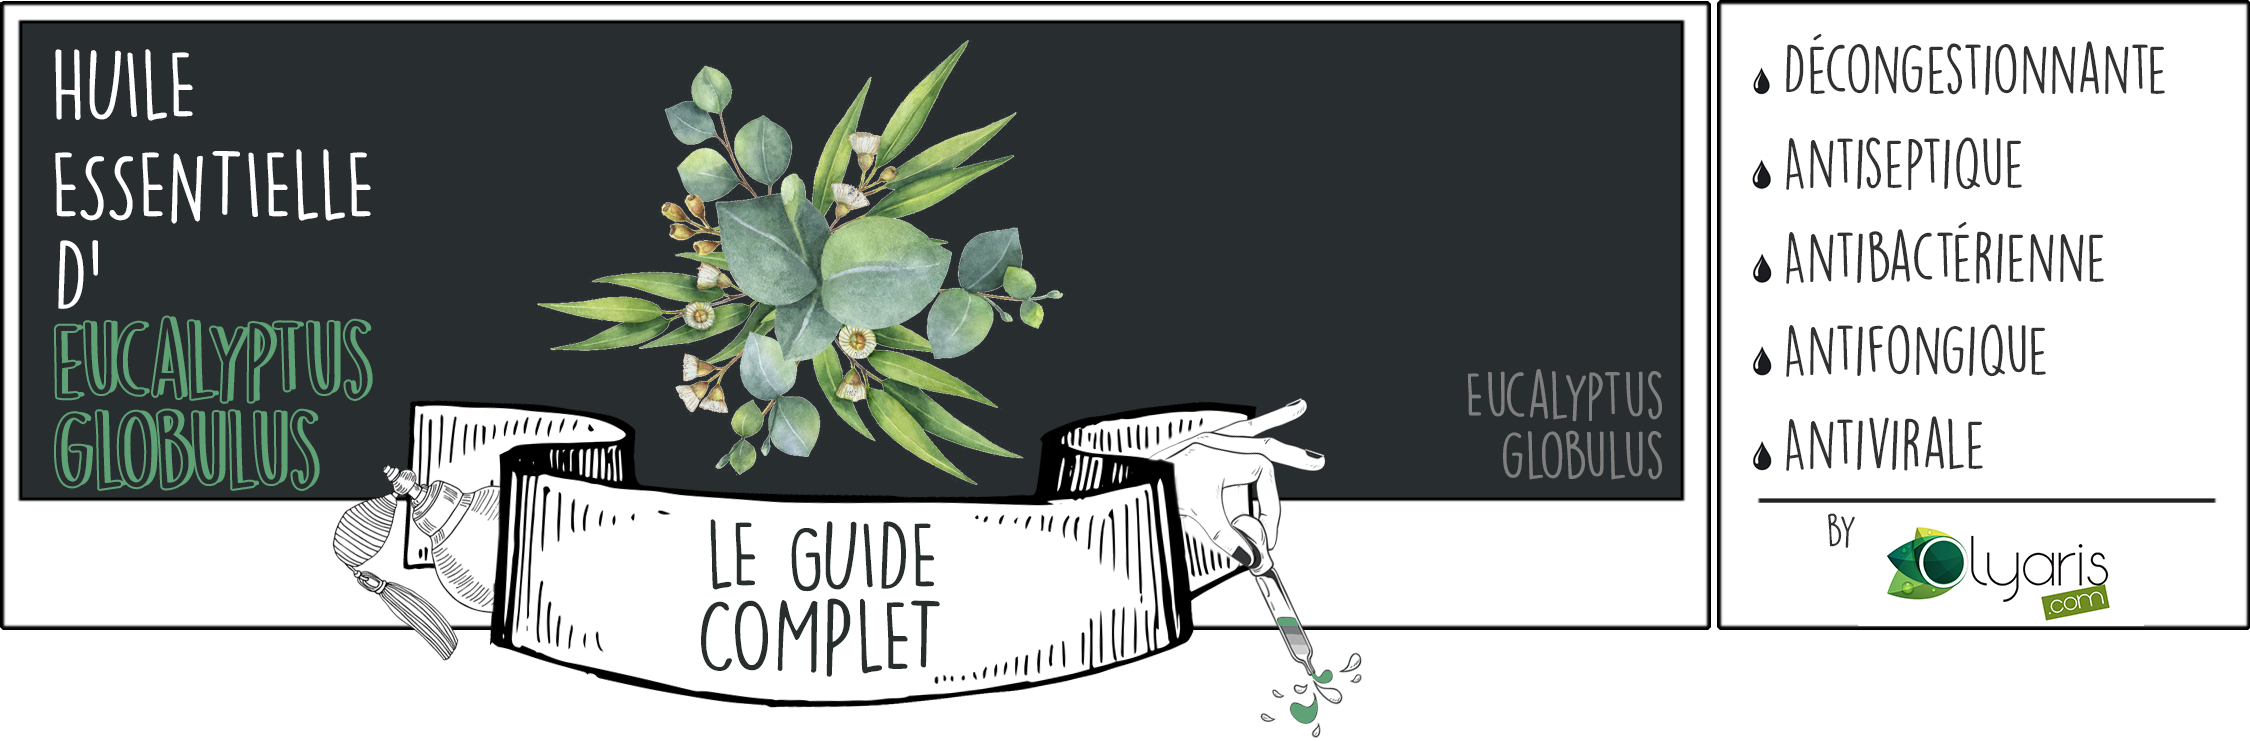 Huile Essentielle d’Eucalyptus Globulus: le Guide Complet par Olyaris